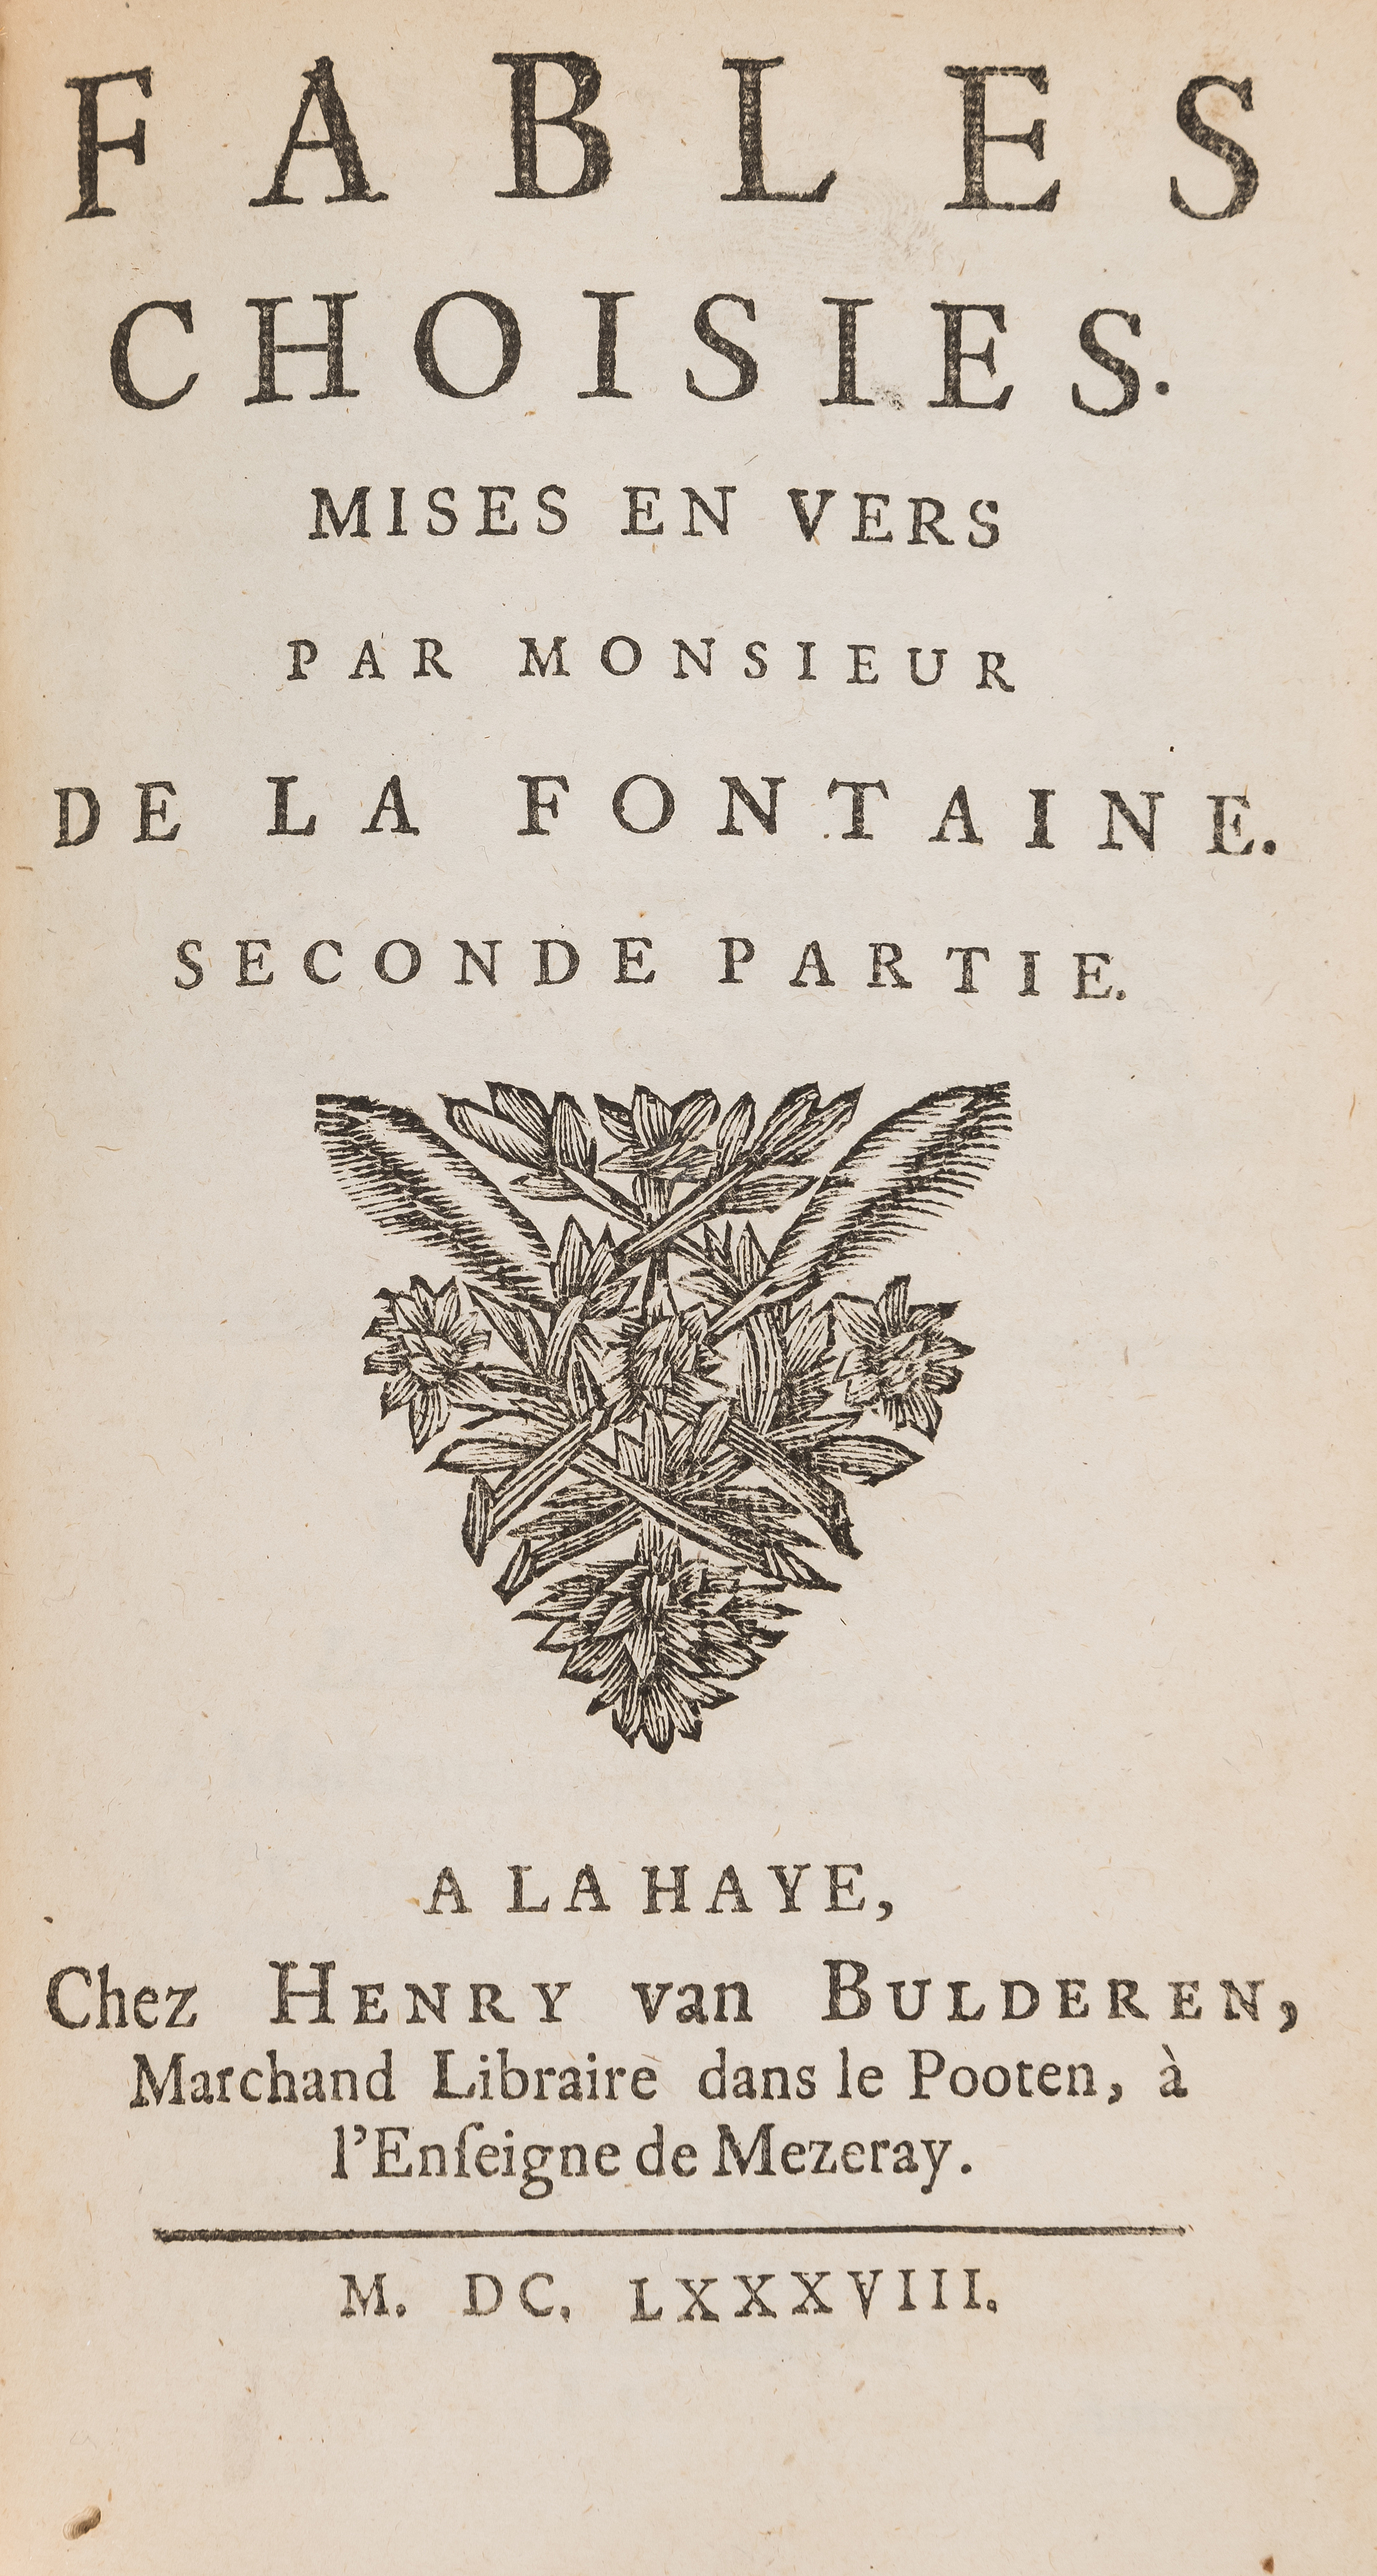 Fontaine (Jean de la) Fables Choisies, 2 vol., The Hague, Henry van Bulderen, 1688.